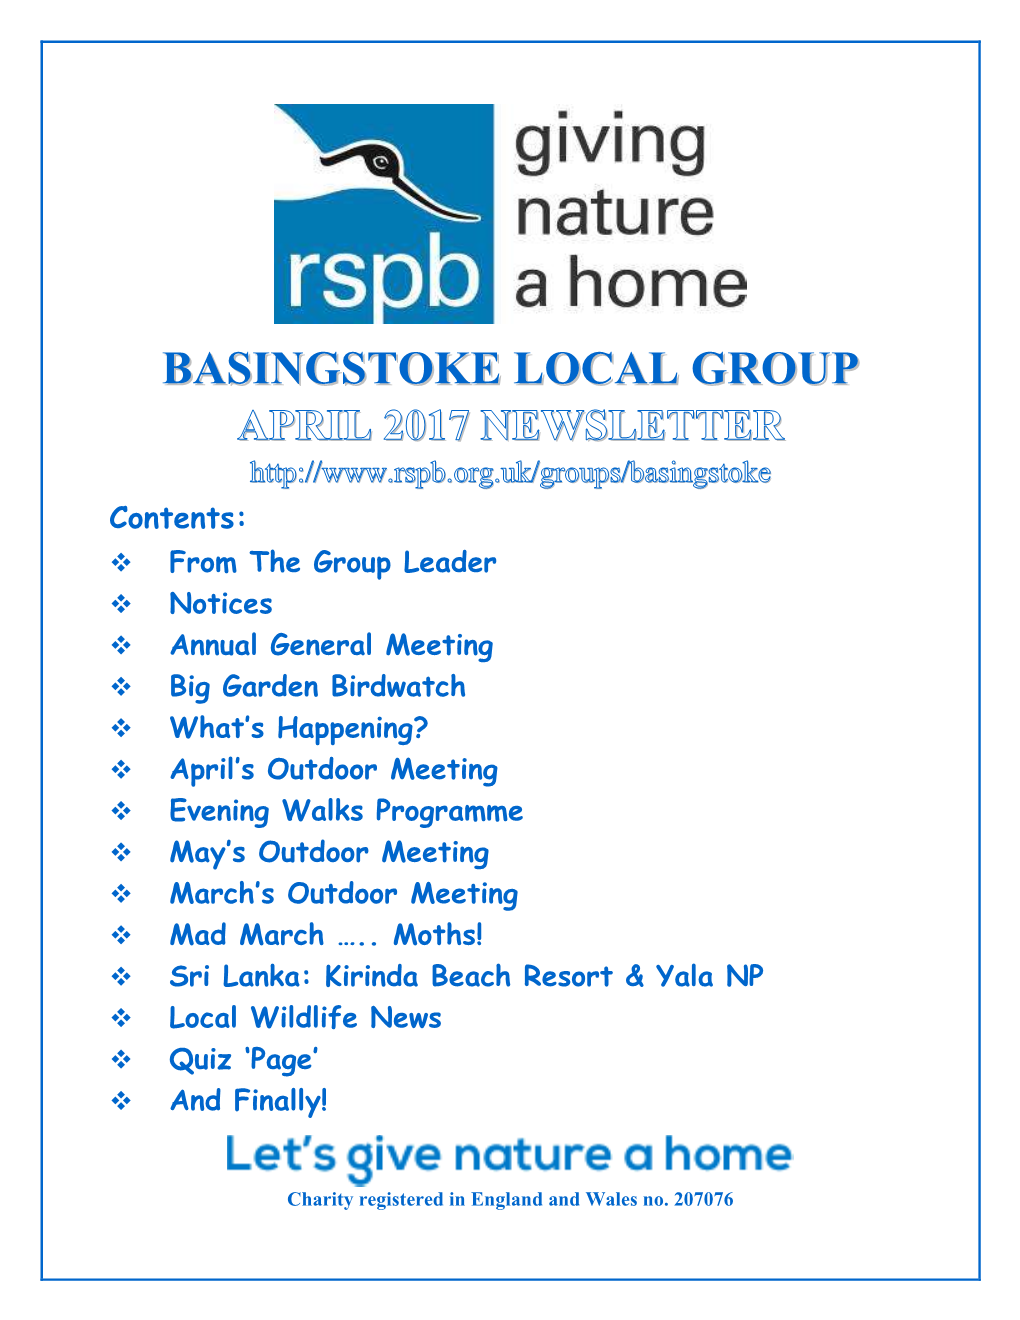 Basingstoke Local Group Annual General Meeting